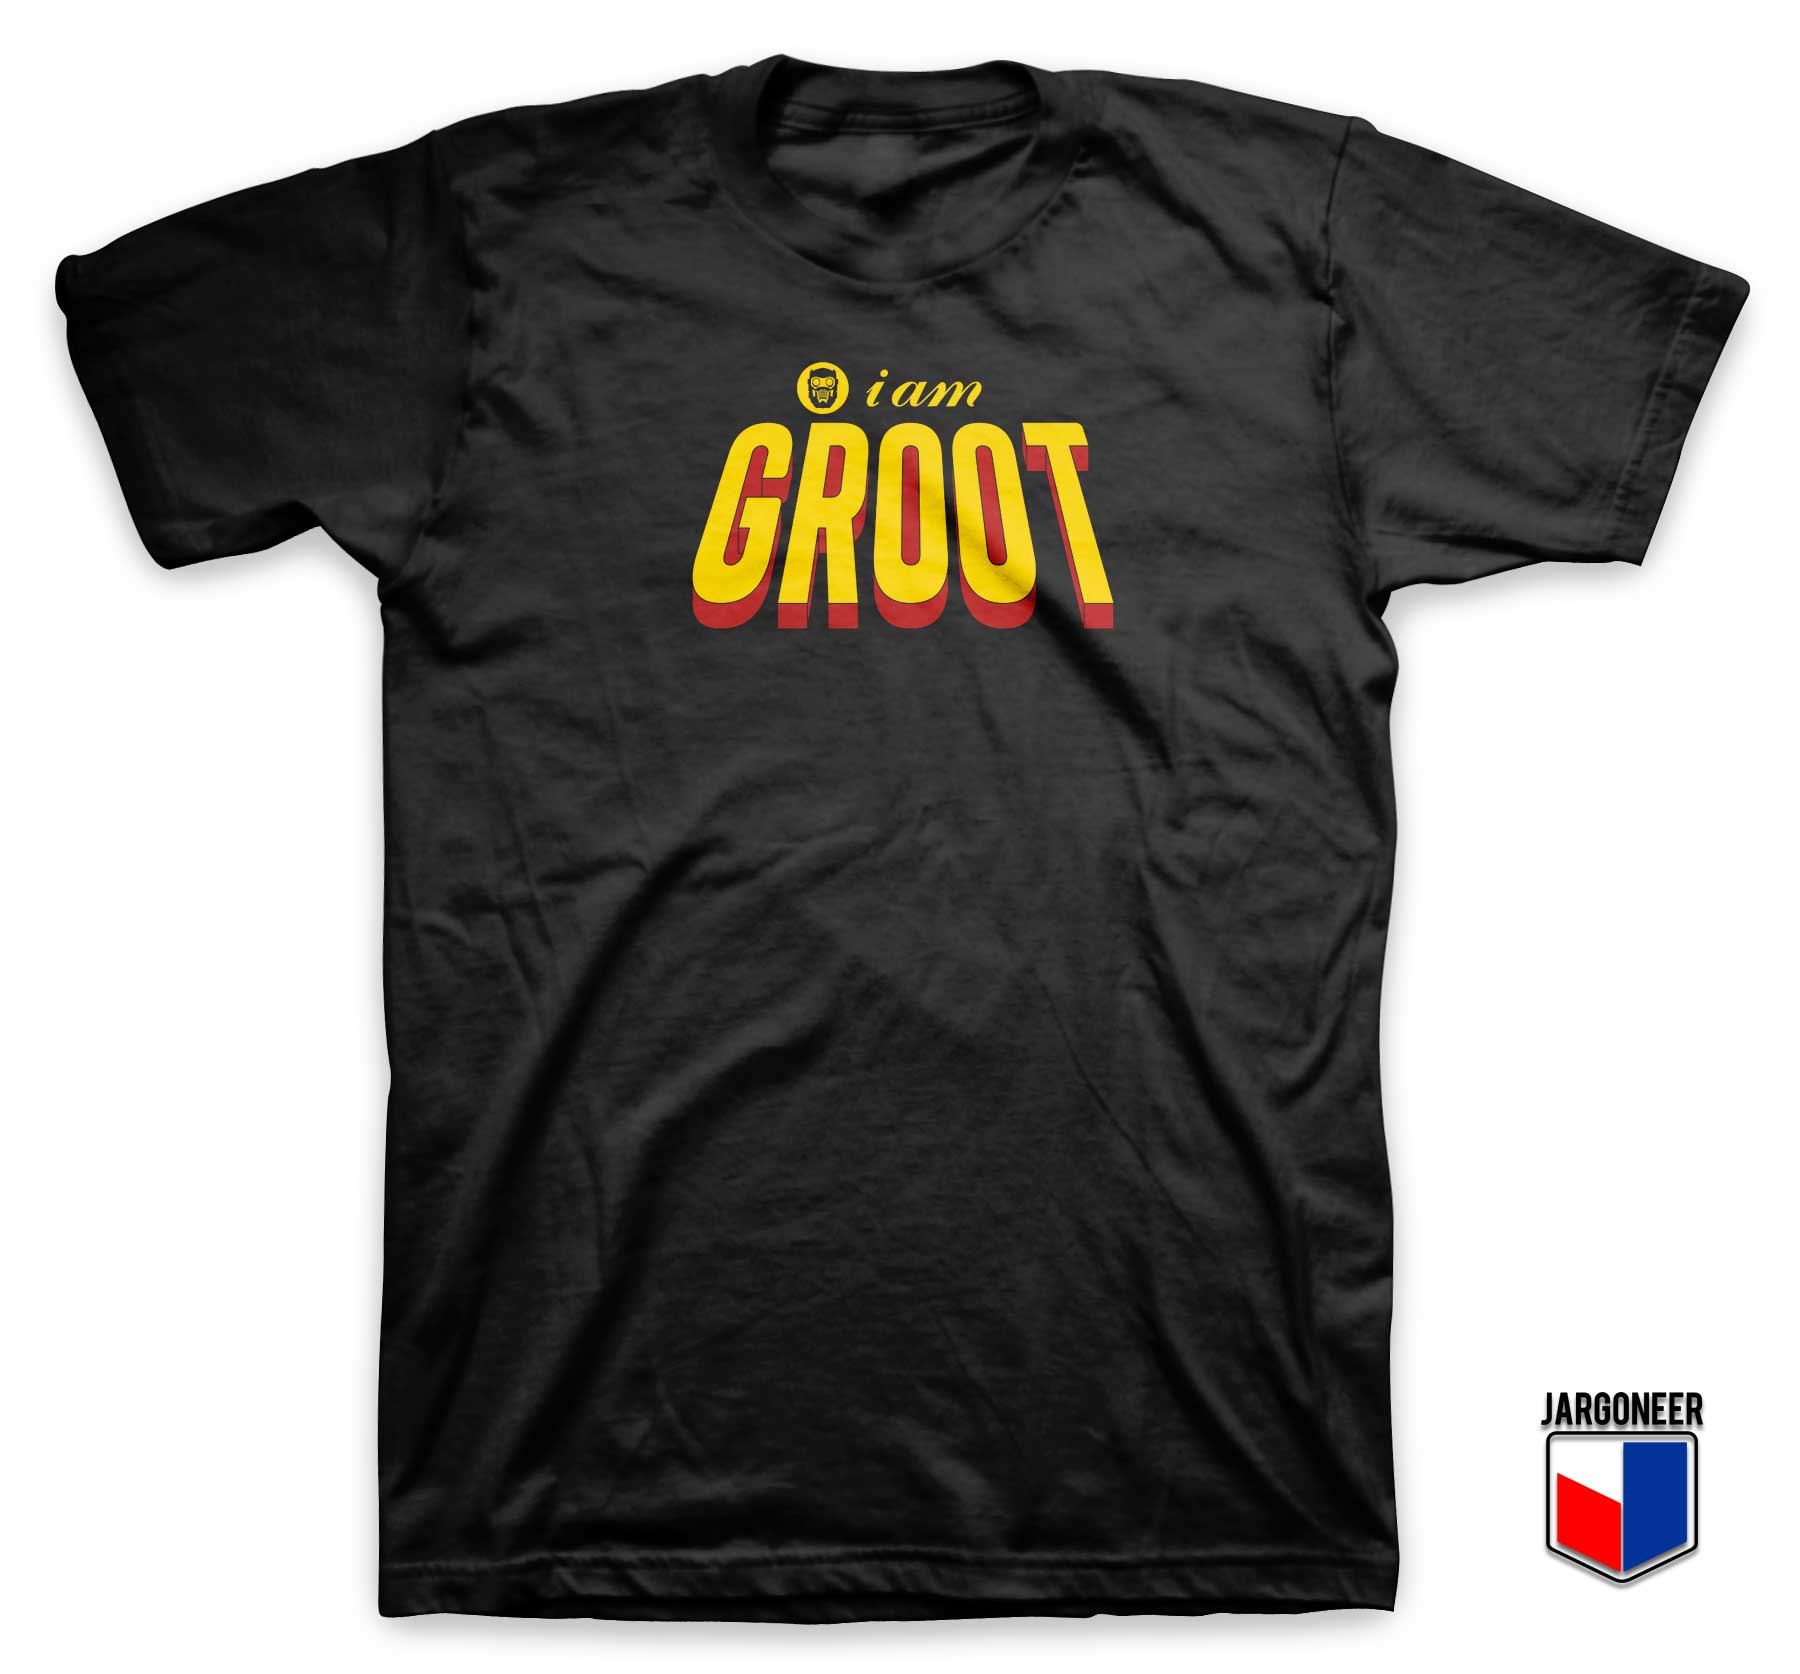 I am Groot T Shirt - Shop Unique Graphic Cool Shirt Designs